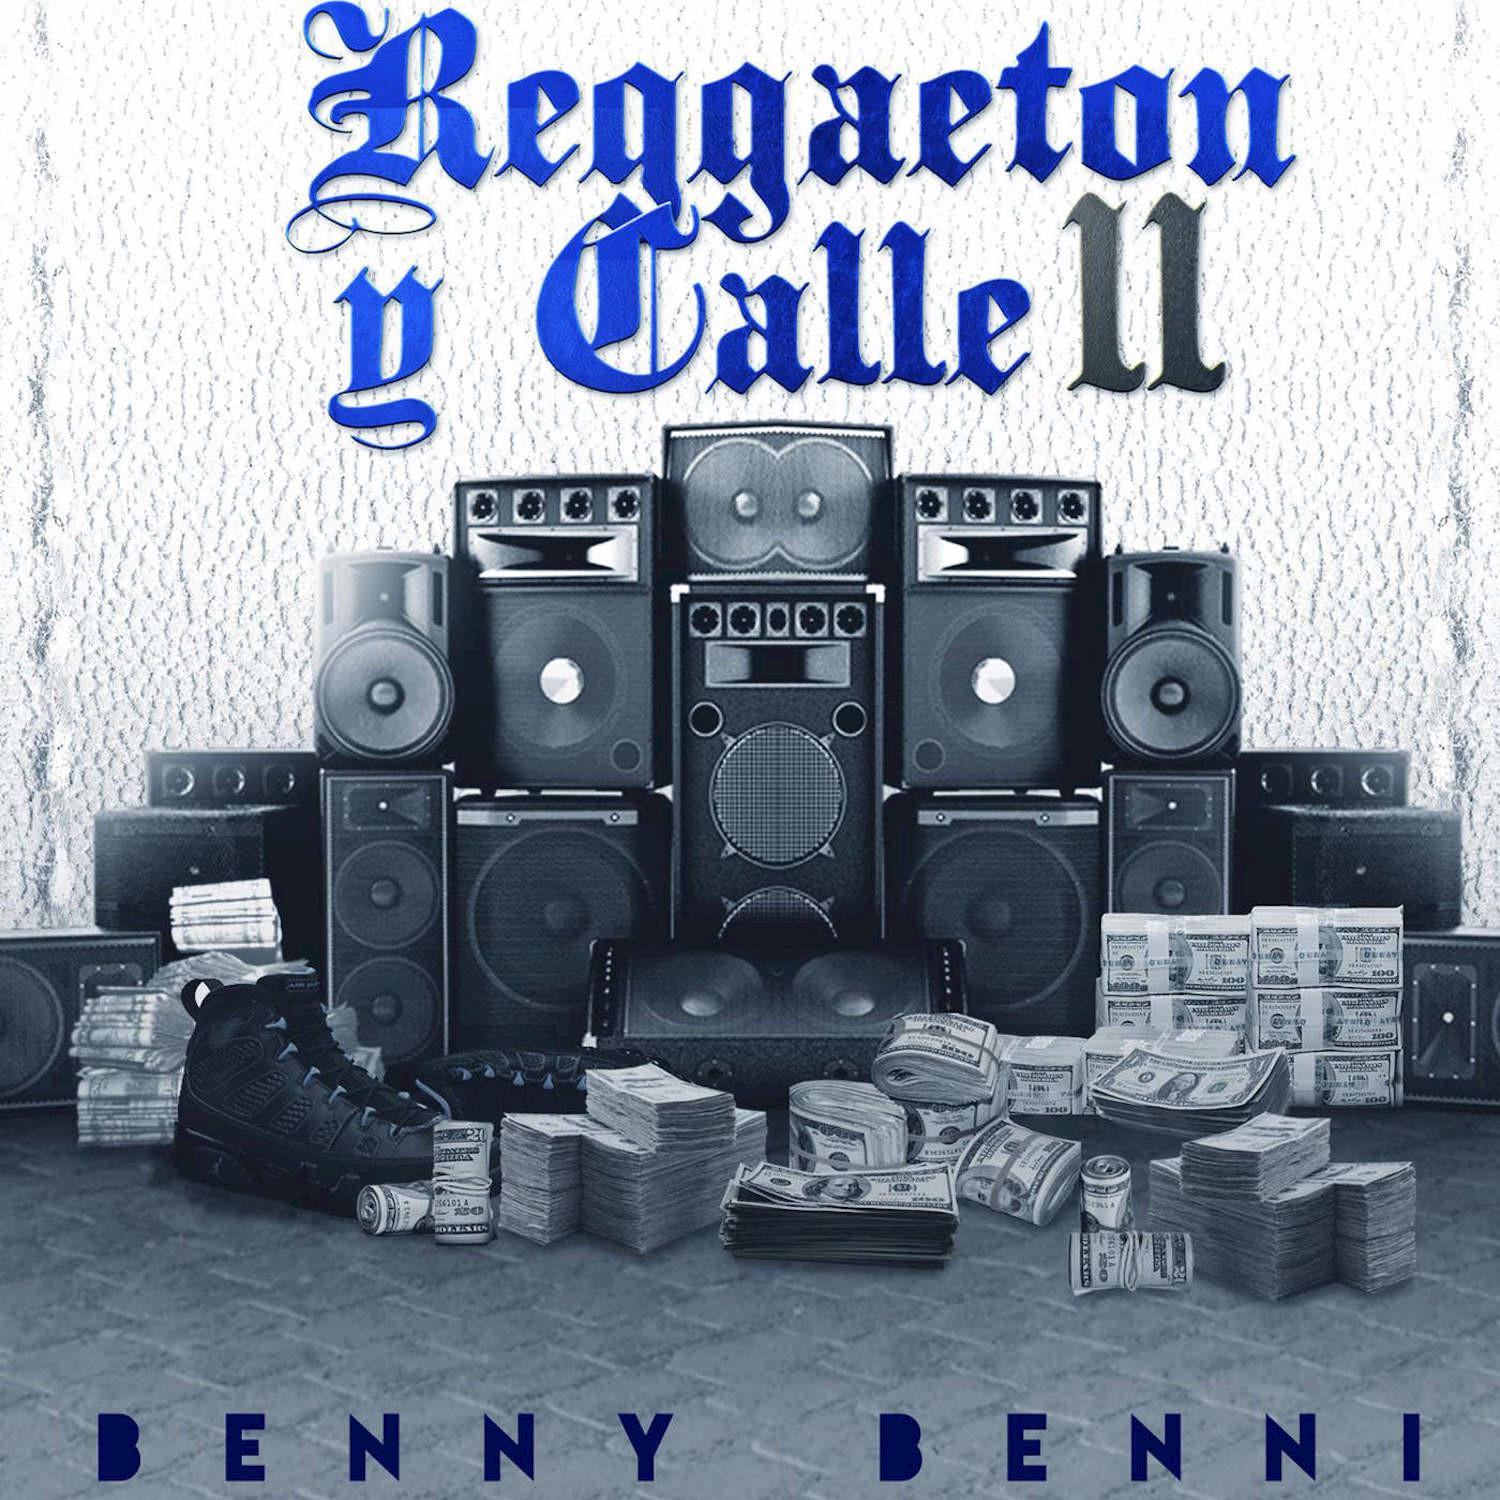 Reggaeton y Calle 2